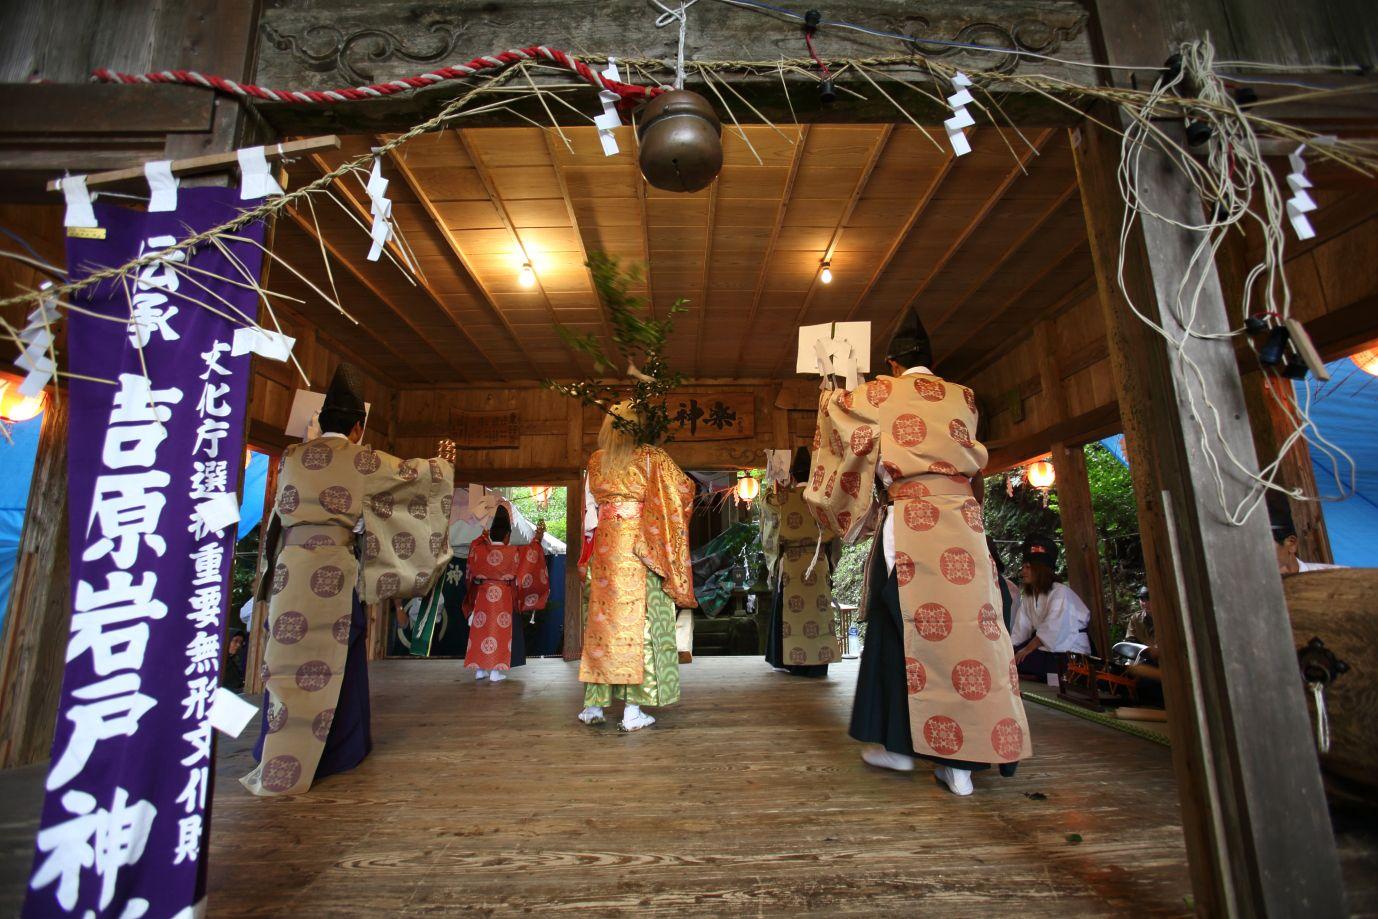 吉原神社大祭 観光地 公式 熊本県観光サイト もっと もーっと くまもっと